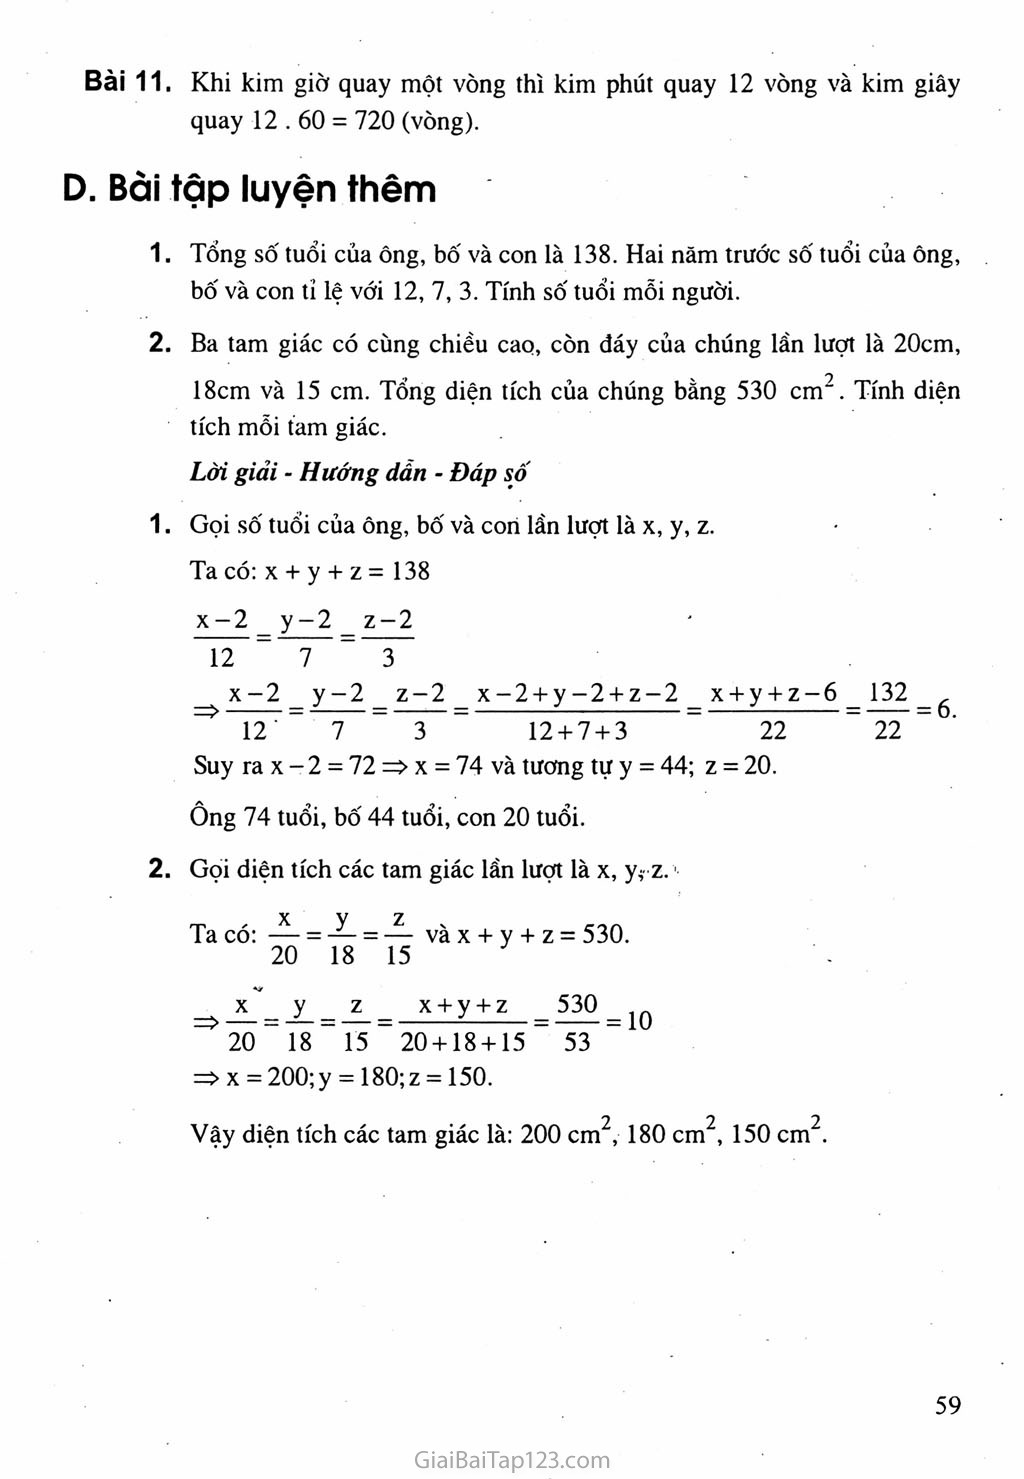 Bài 2. Một số bài toán về đại lượng tỉ lệ thuận trang 4